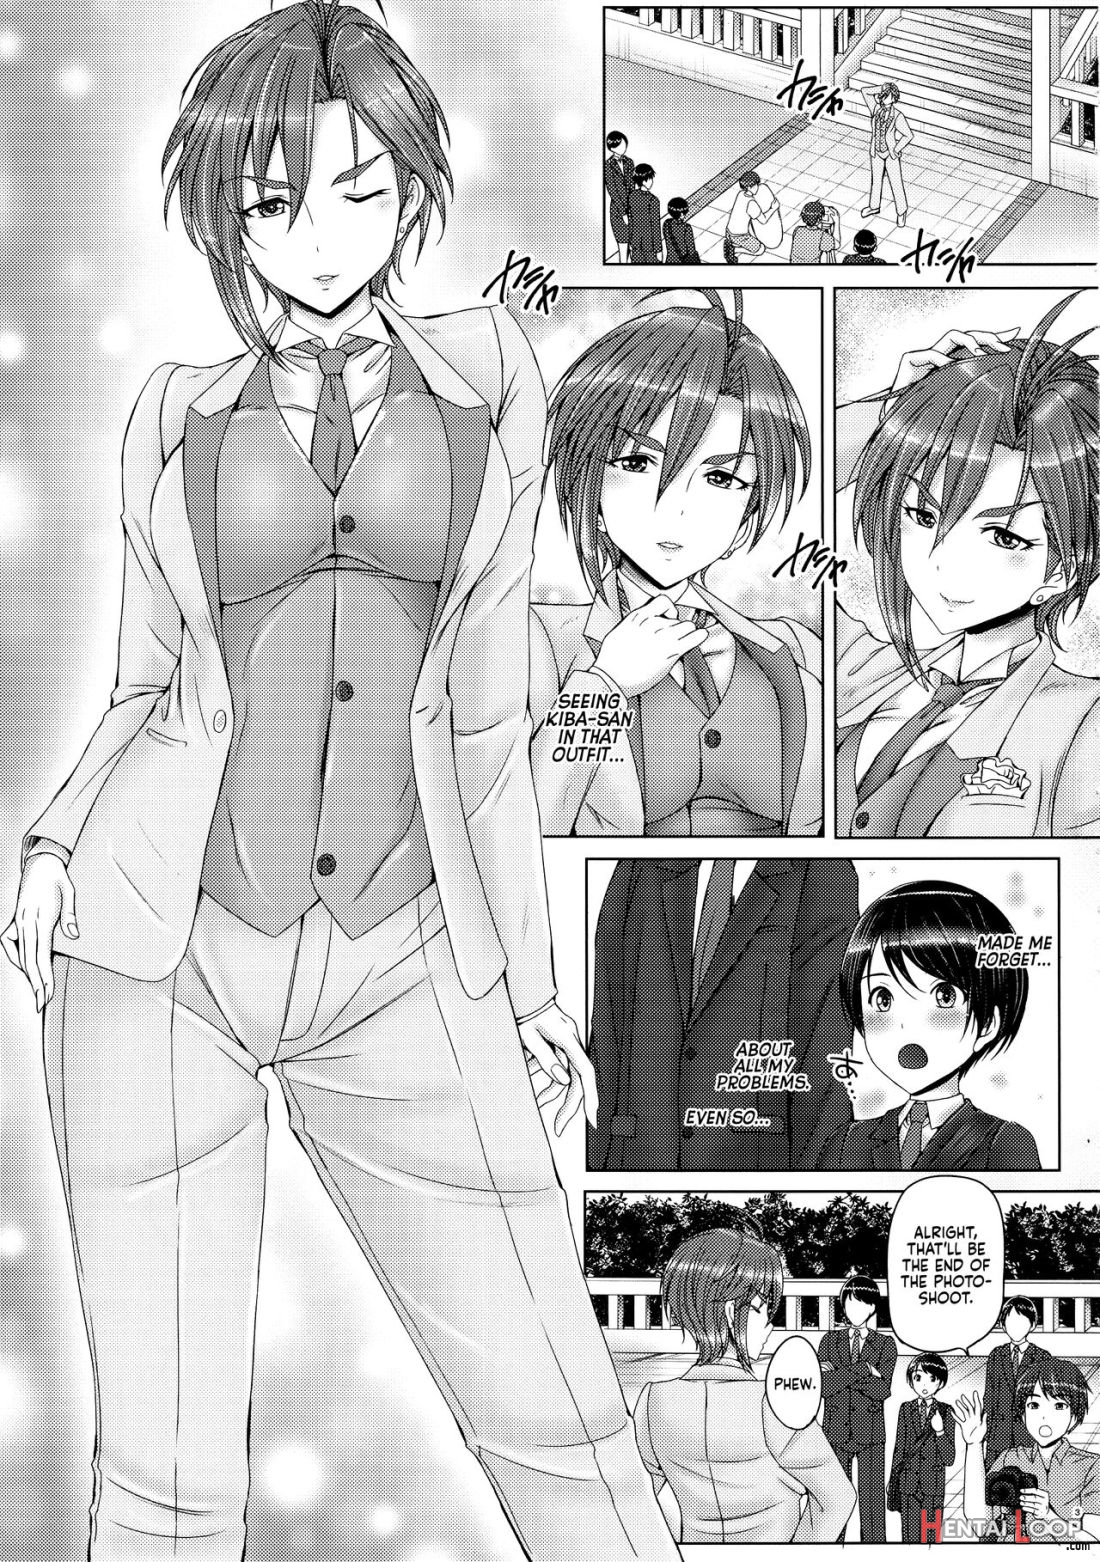 Kiba-san To Shota-p 2 page 2